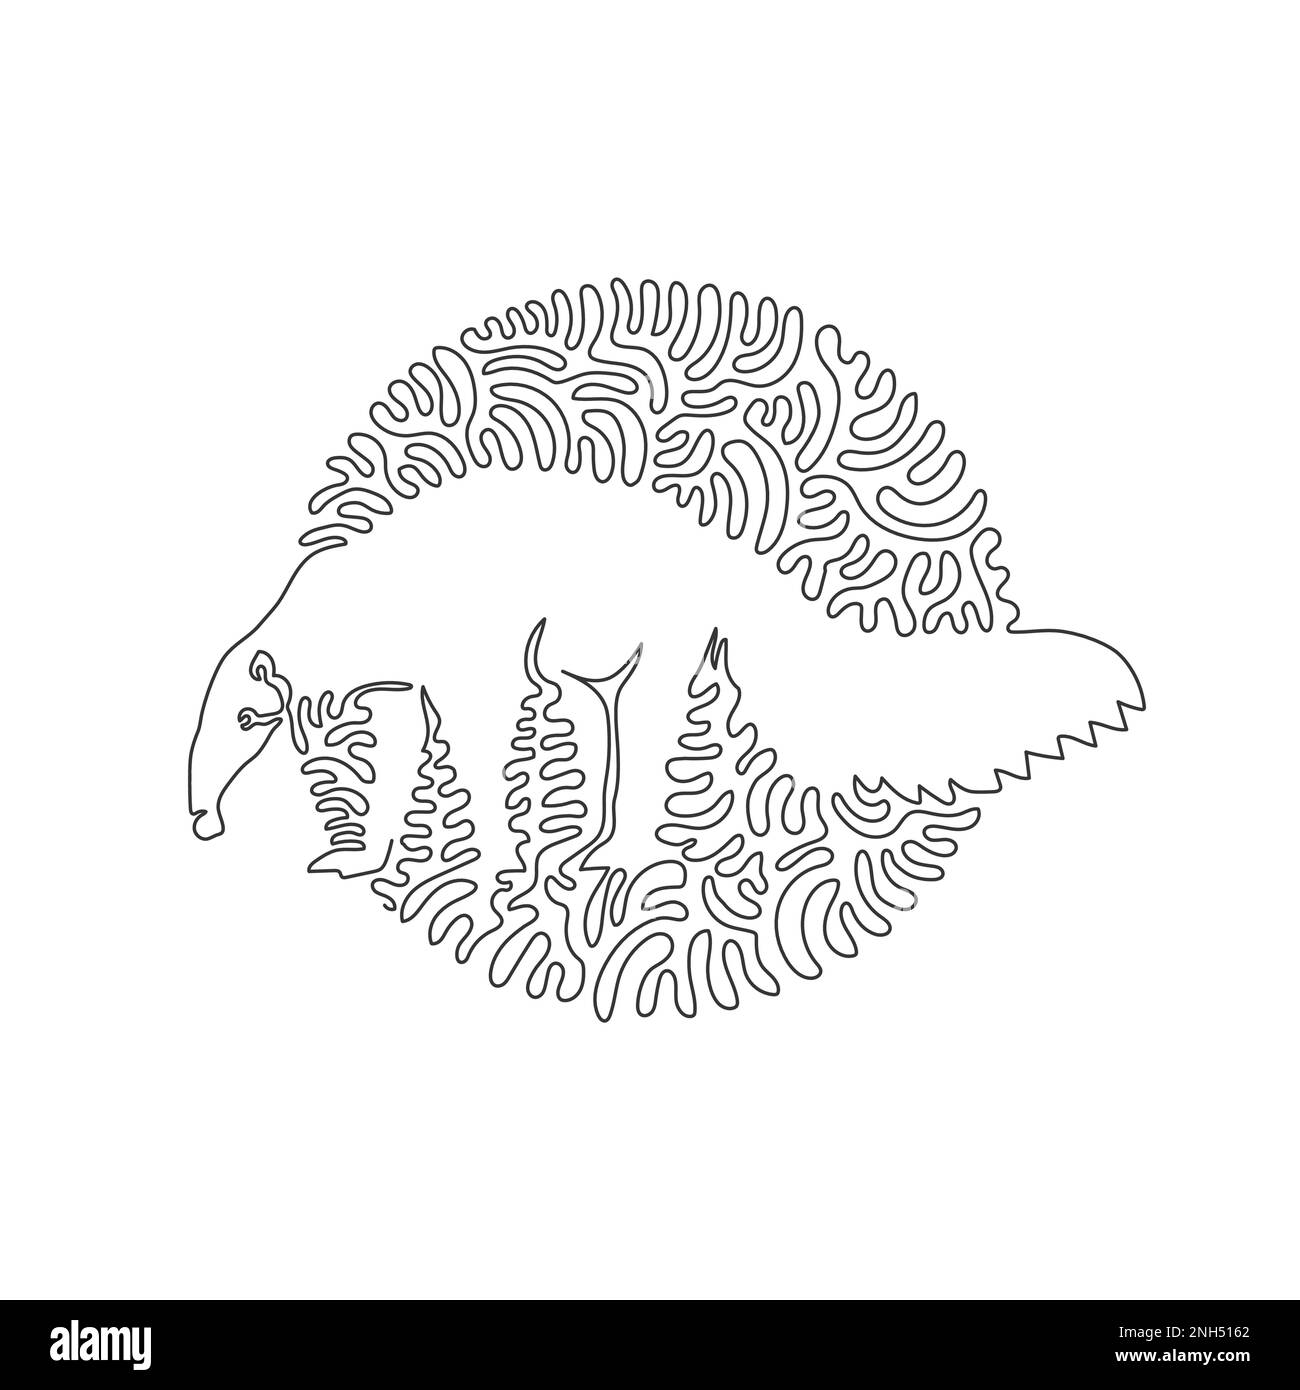 Disegno continuo di una linea curva di un'arte astratta di anteater creepy in cerchio. Illustrazione del vettore di tratto modificabile a linea singola di mammiferi che mangiano insetti Illustrazione Vettoriale